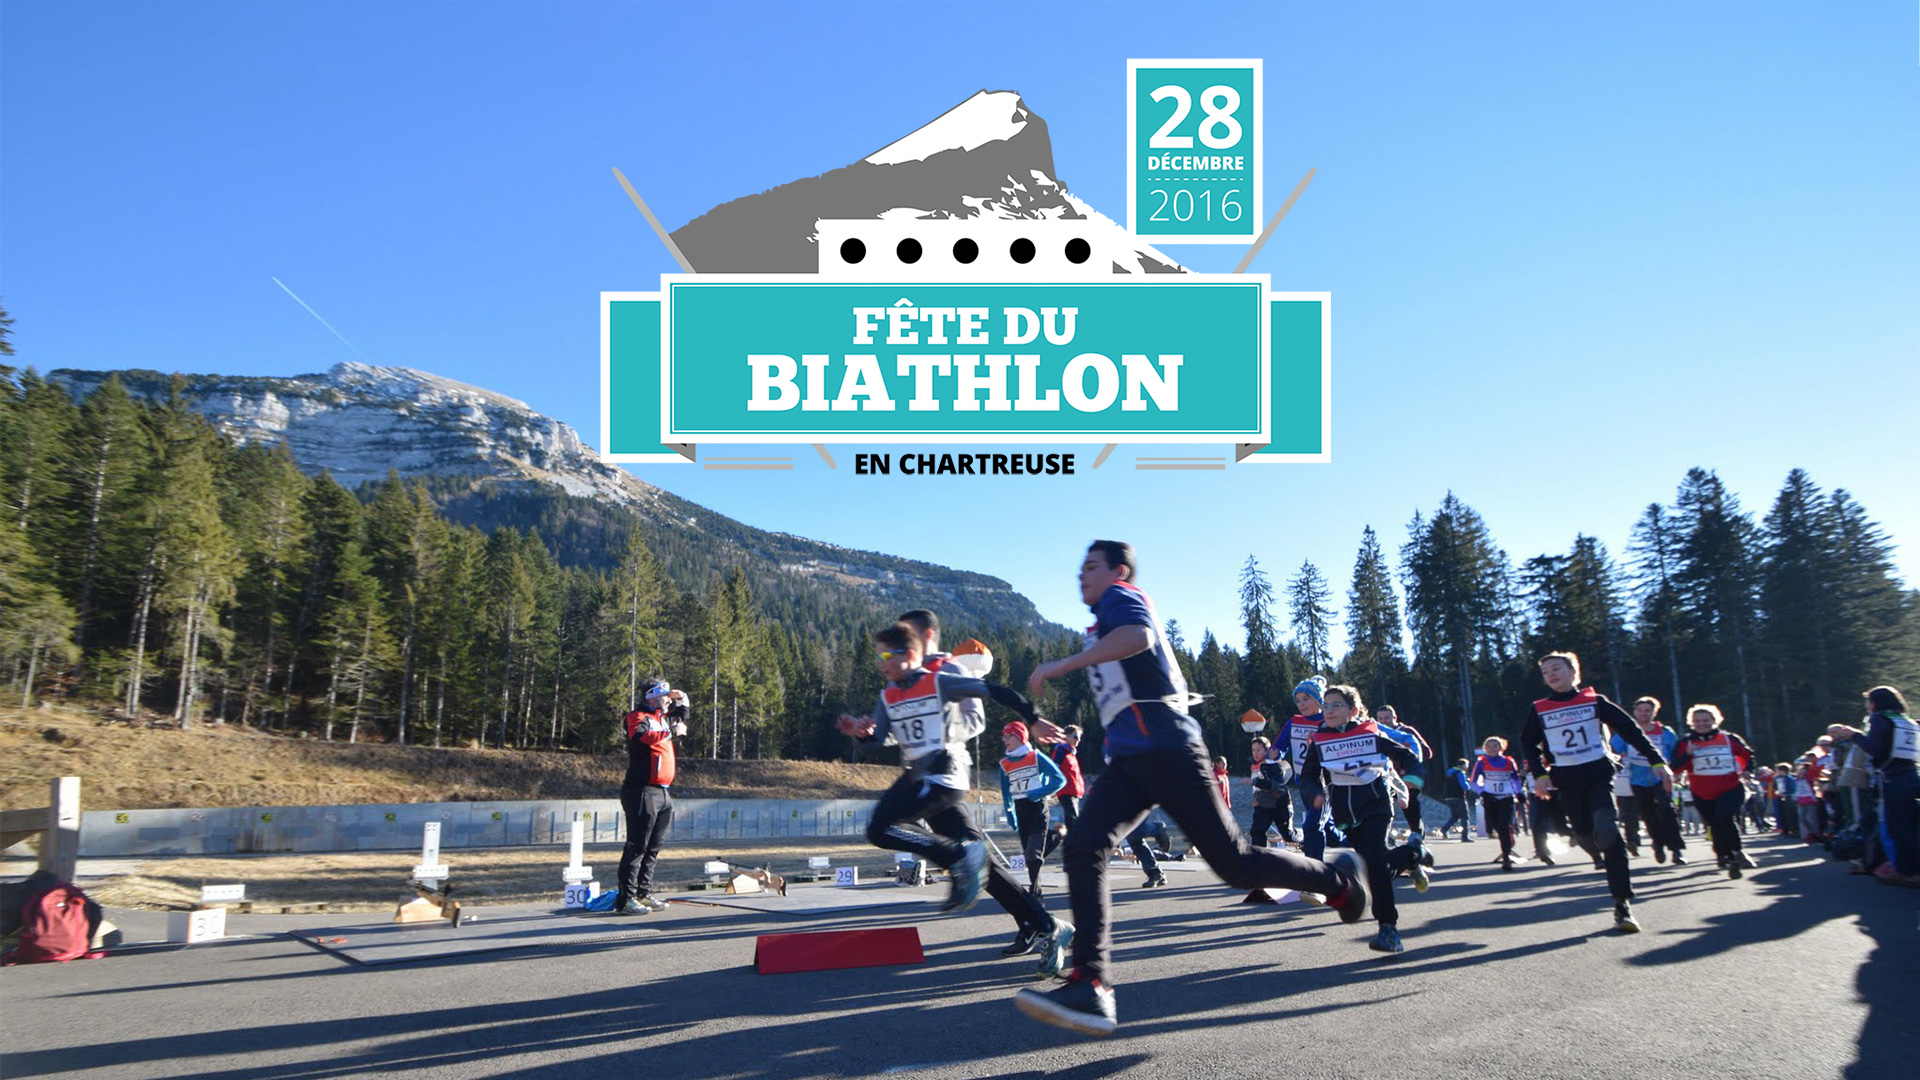 Fête du Biathlon en Chartreuse avec Alpinum Events